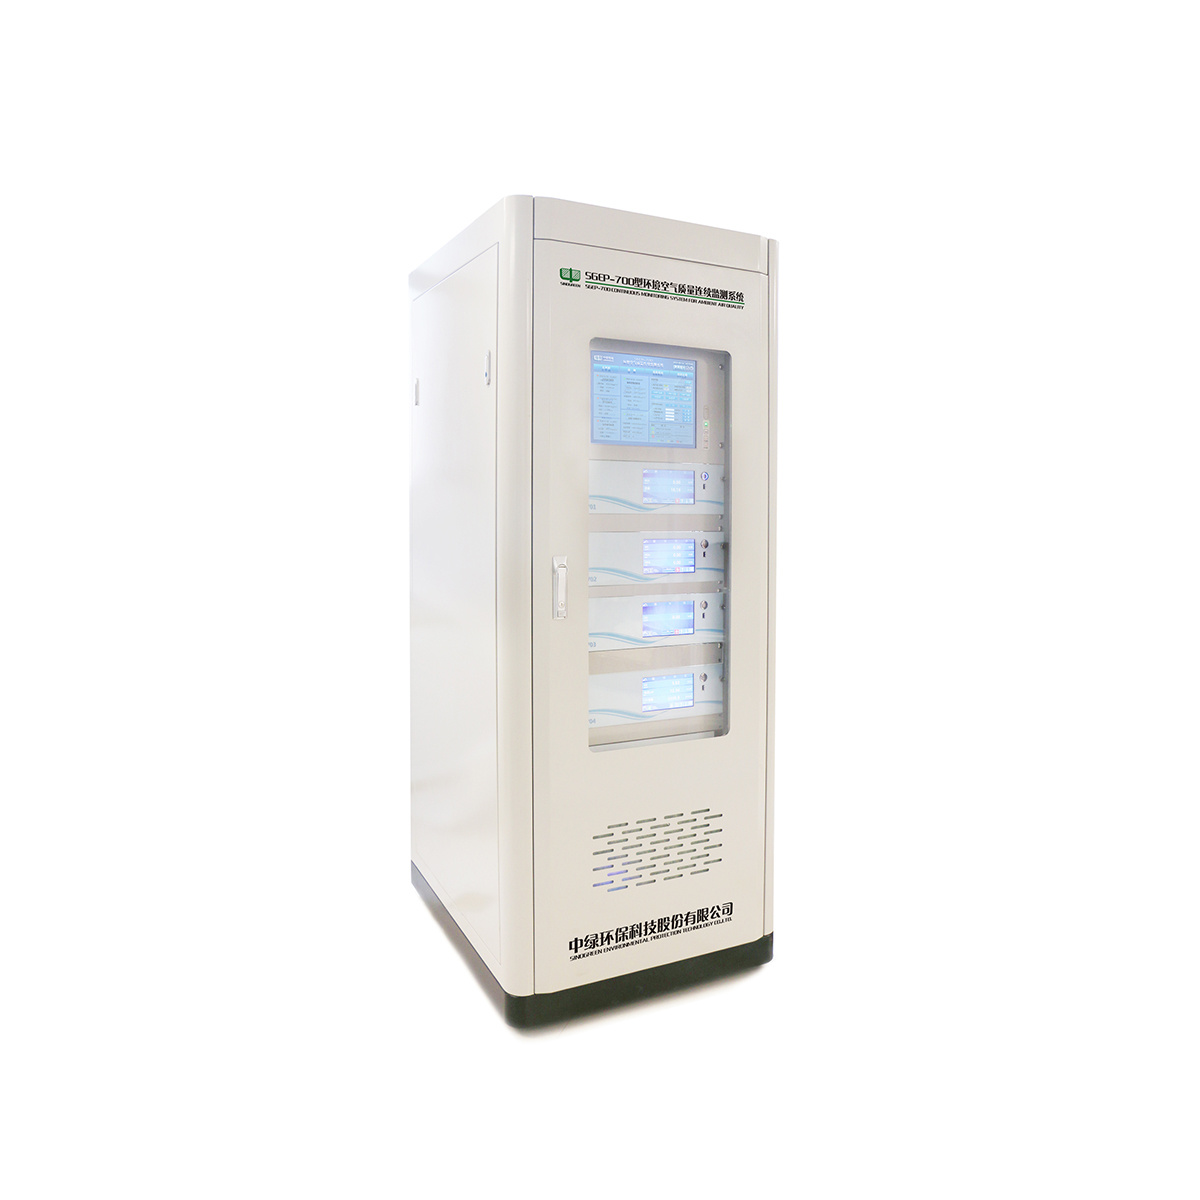 SGEP-700环境空气质量连续监测系统